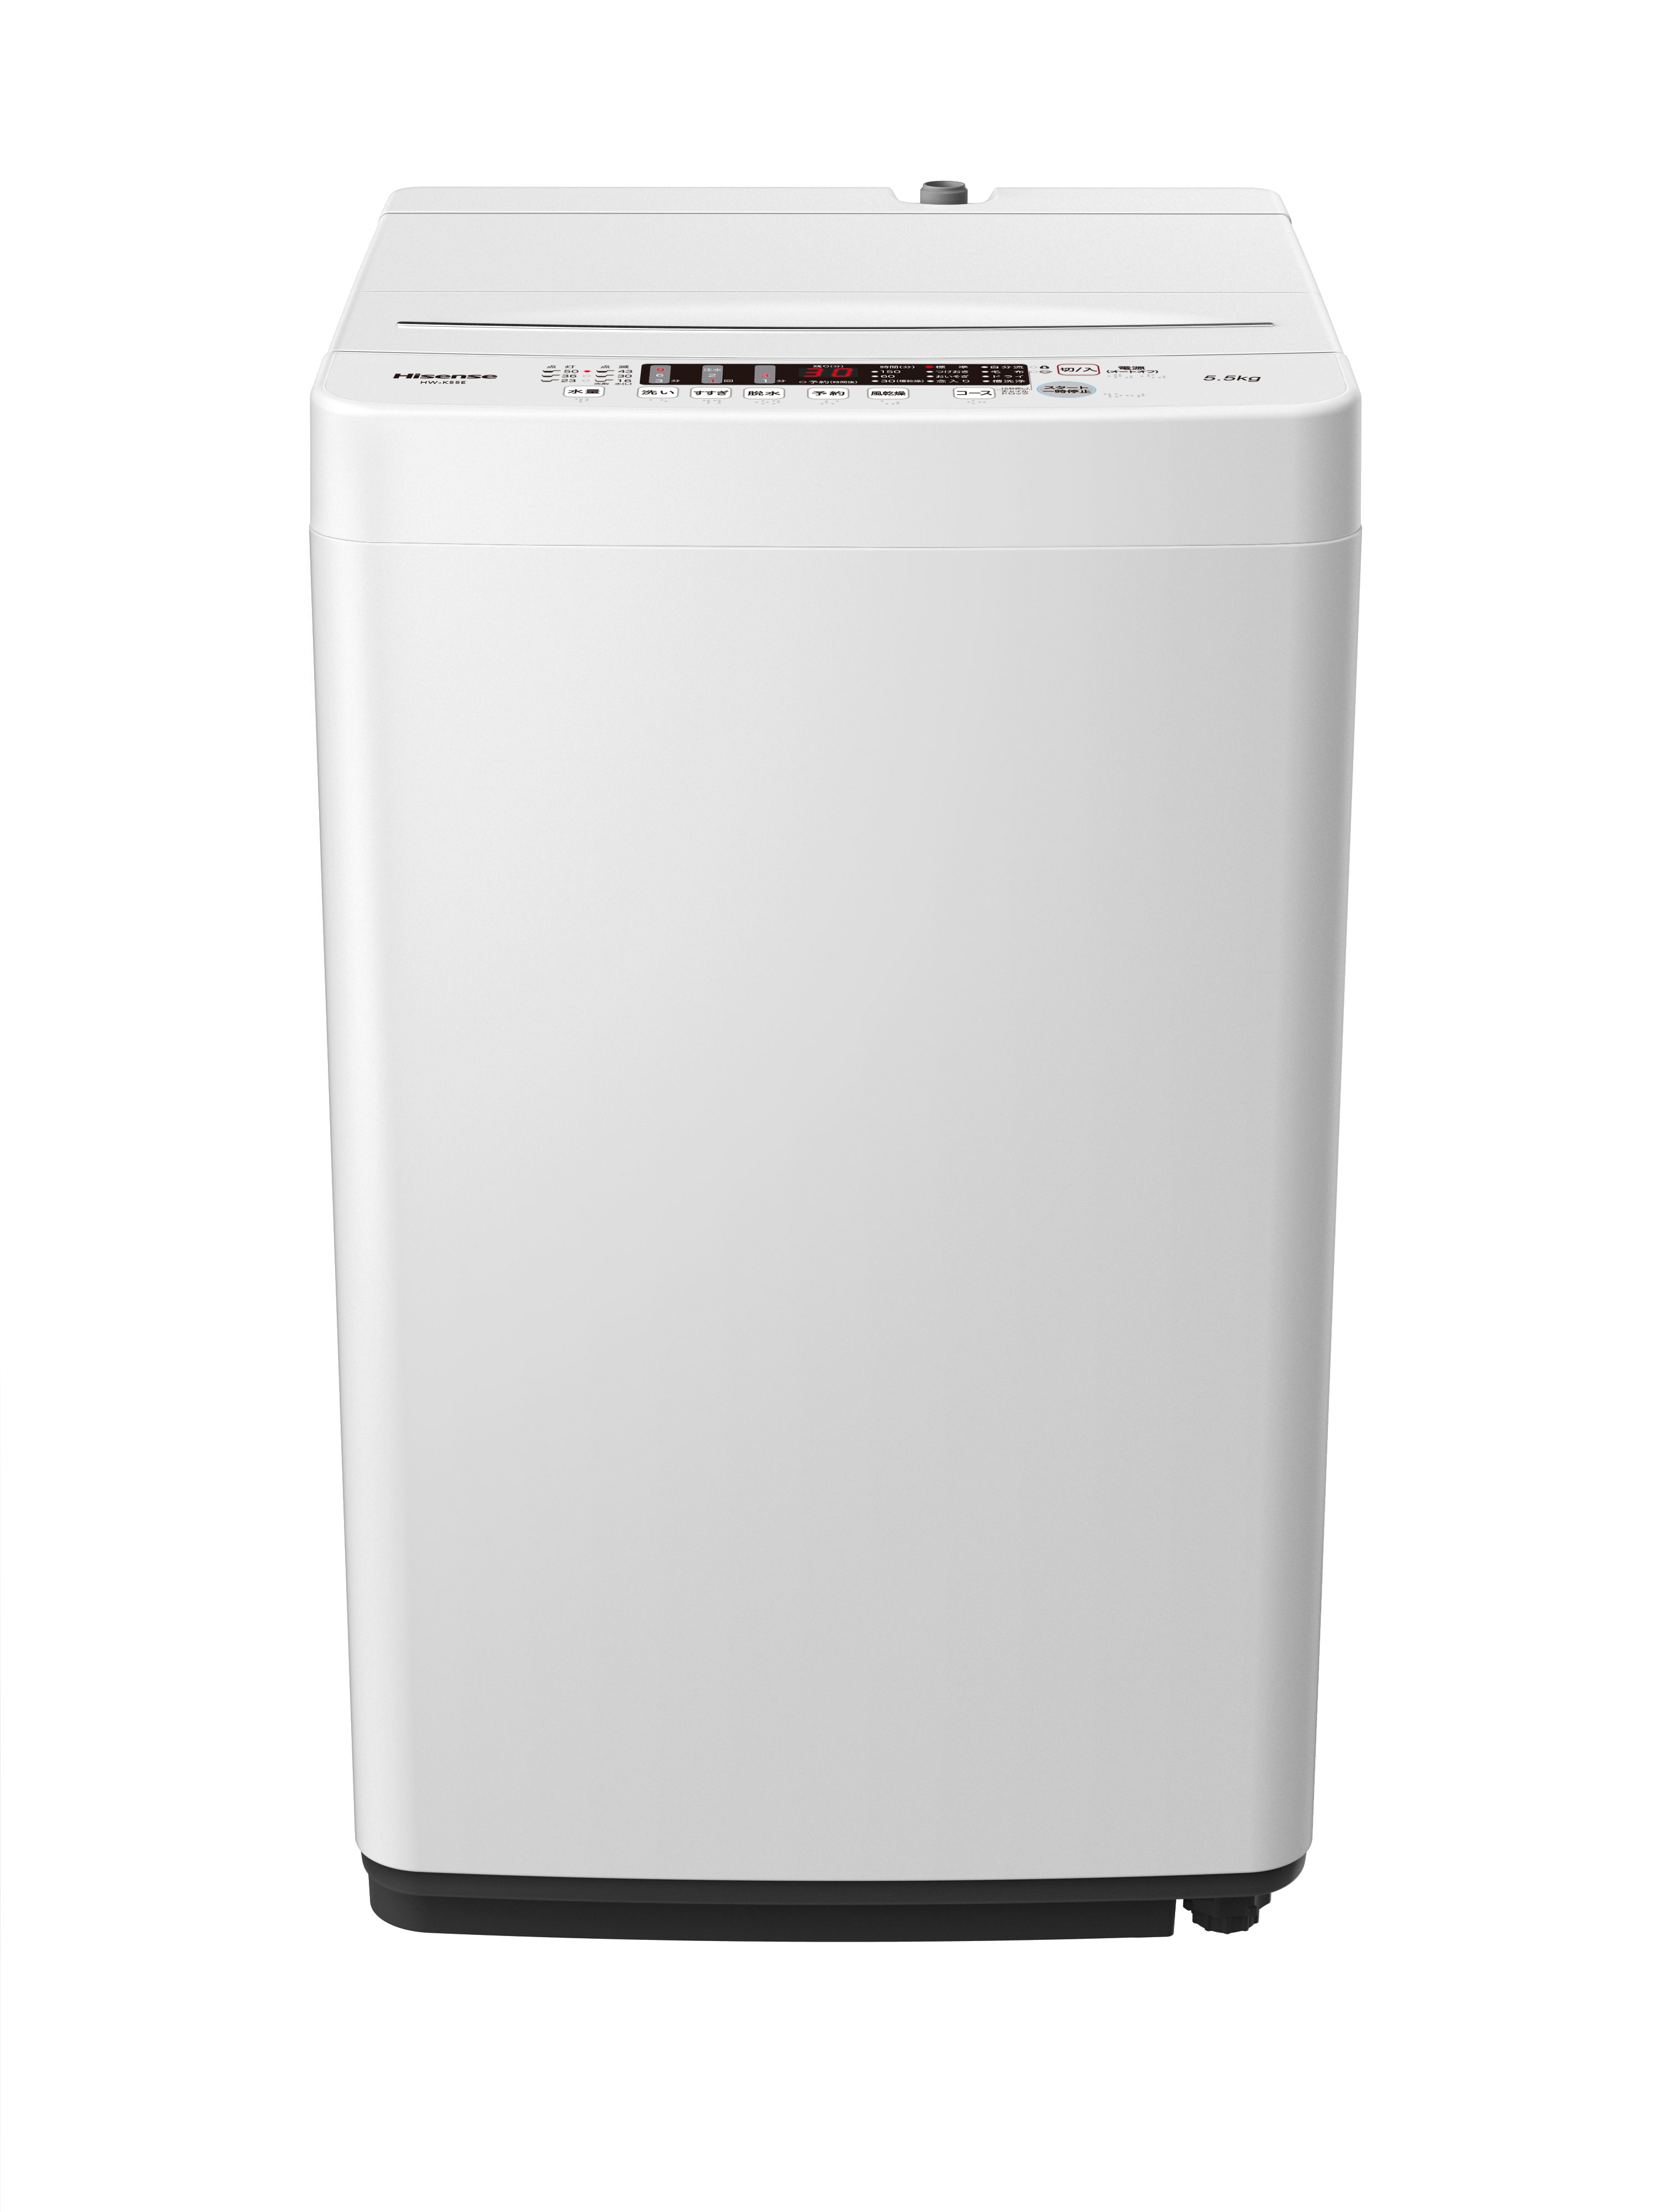 5.5kg 全自動洗濯機 HW-K55E | ハイセンスジャパン株式会社